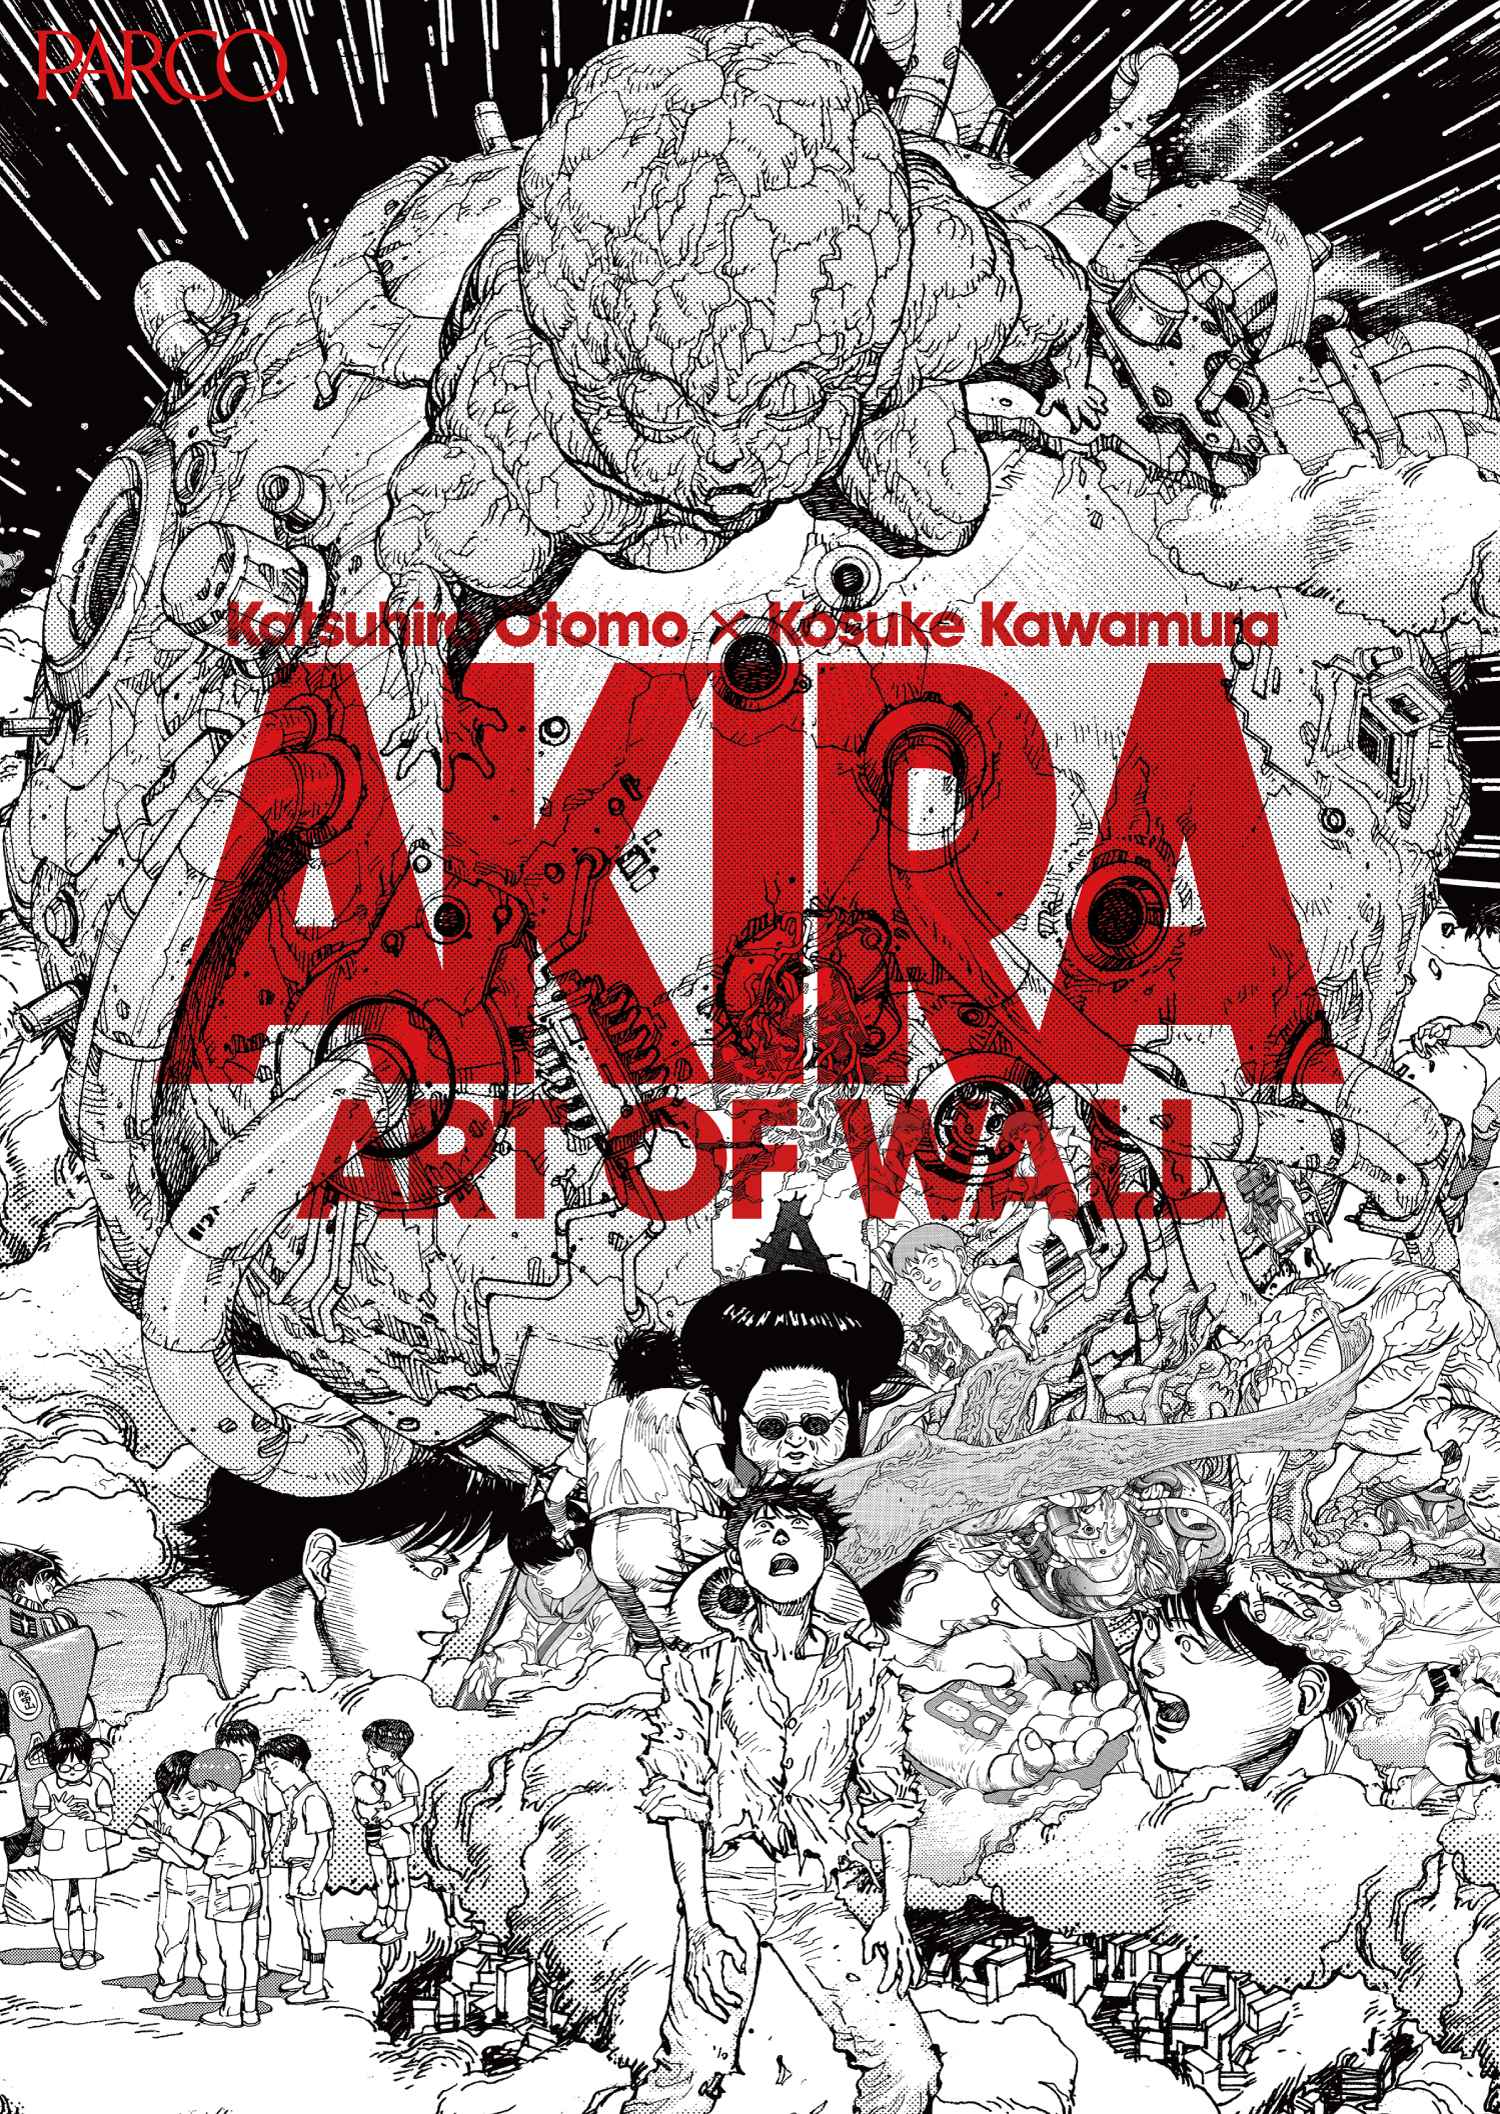 大友克洋氏×河村康輔氏の巨大コラージュ作品を展示　AKIRA ART OF WALL Otomo Katsuhiro × Kosuke Kawamura  AKIRA ART EXHIBITION